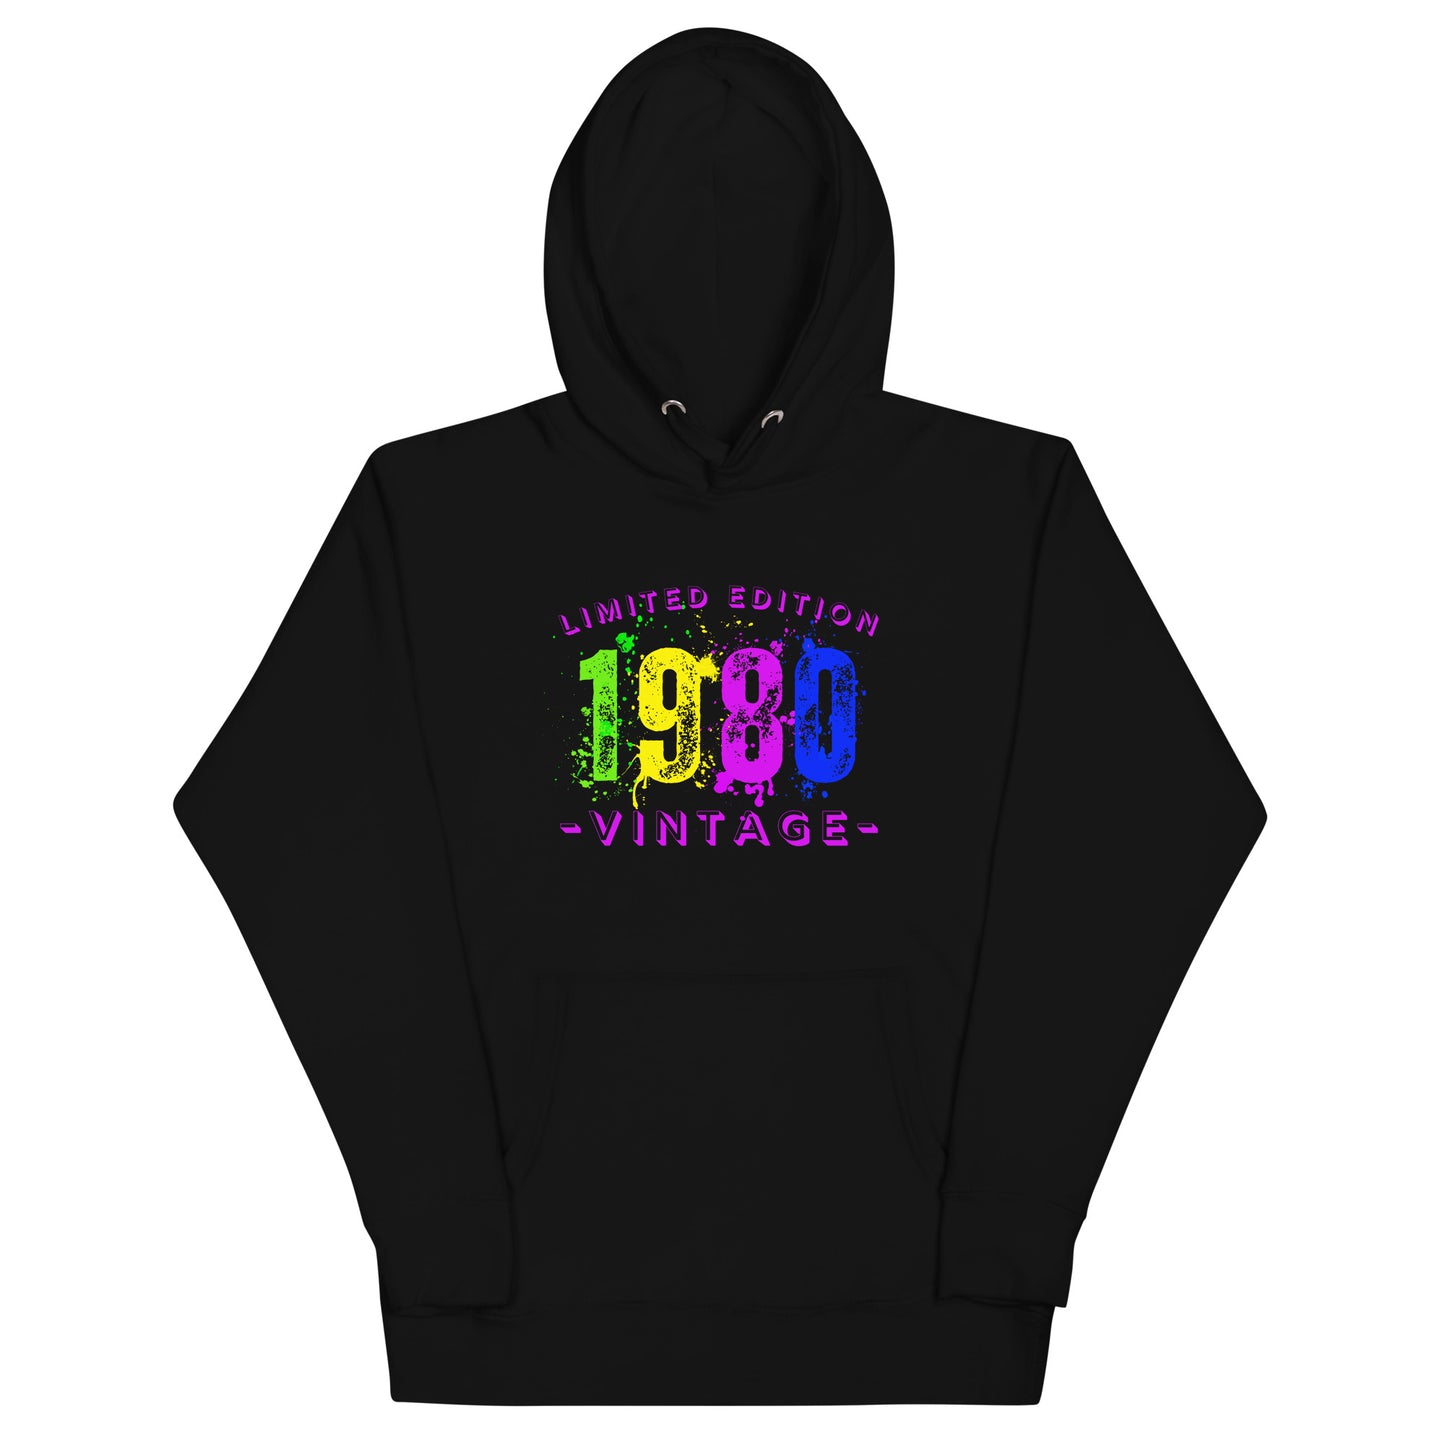 1980 Vintage Unisex Hoodie Sweatshirt